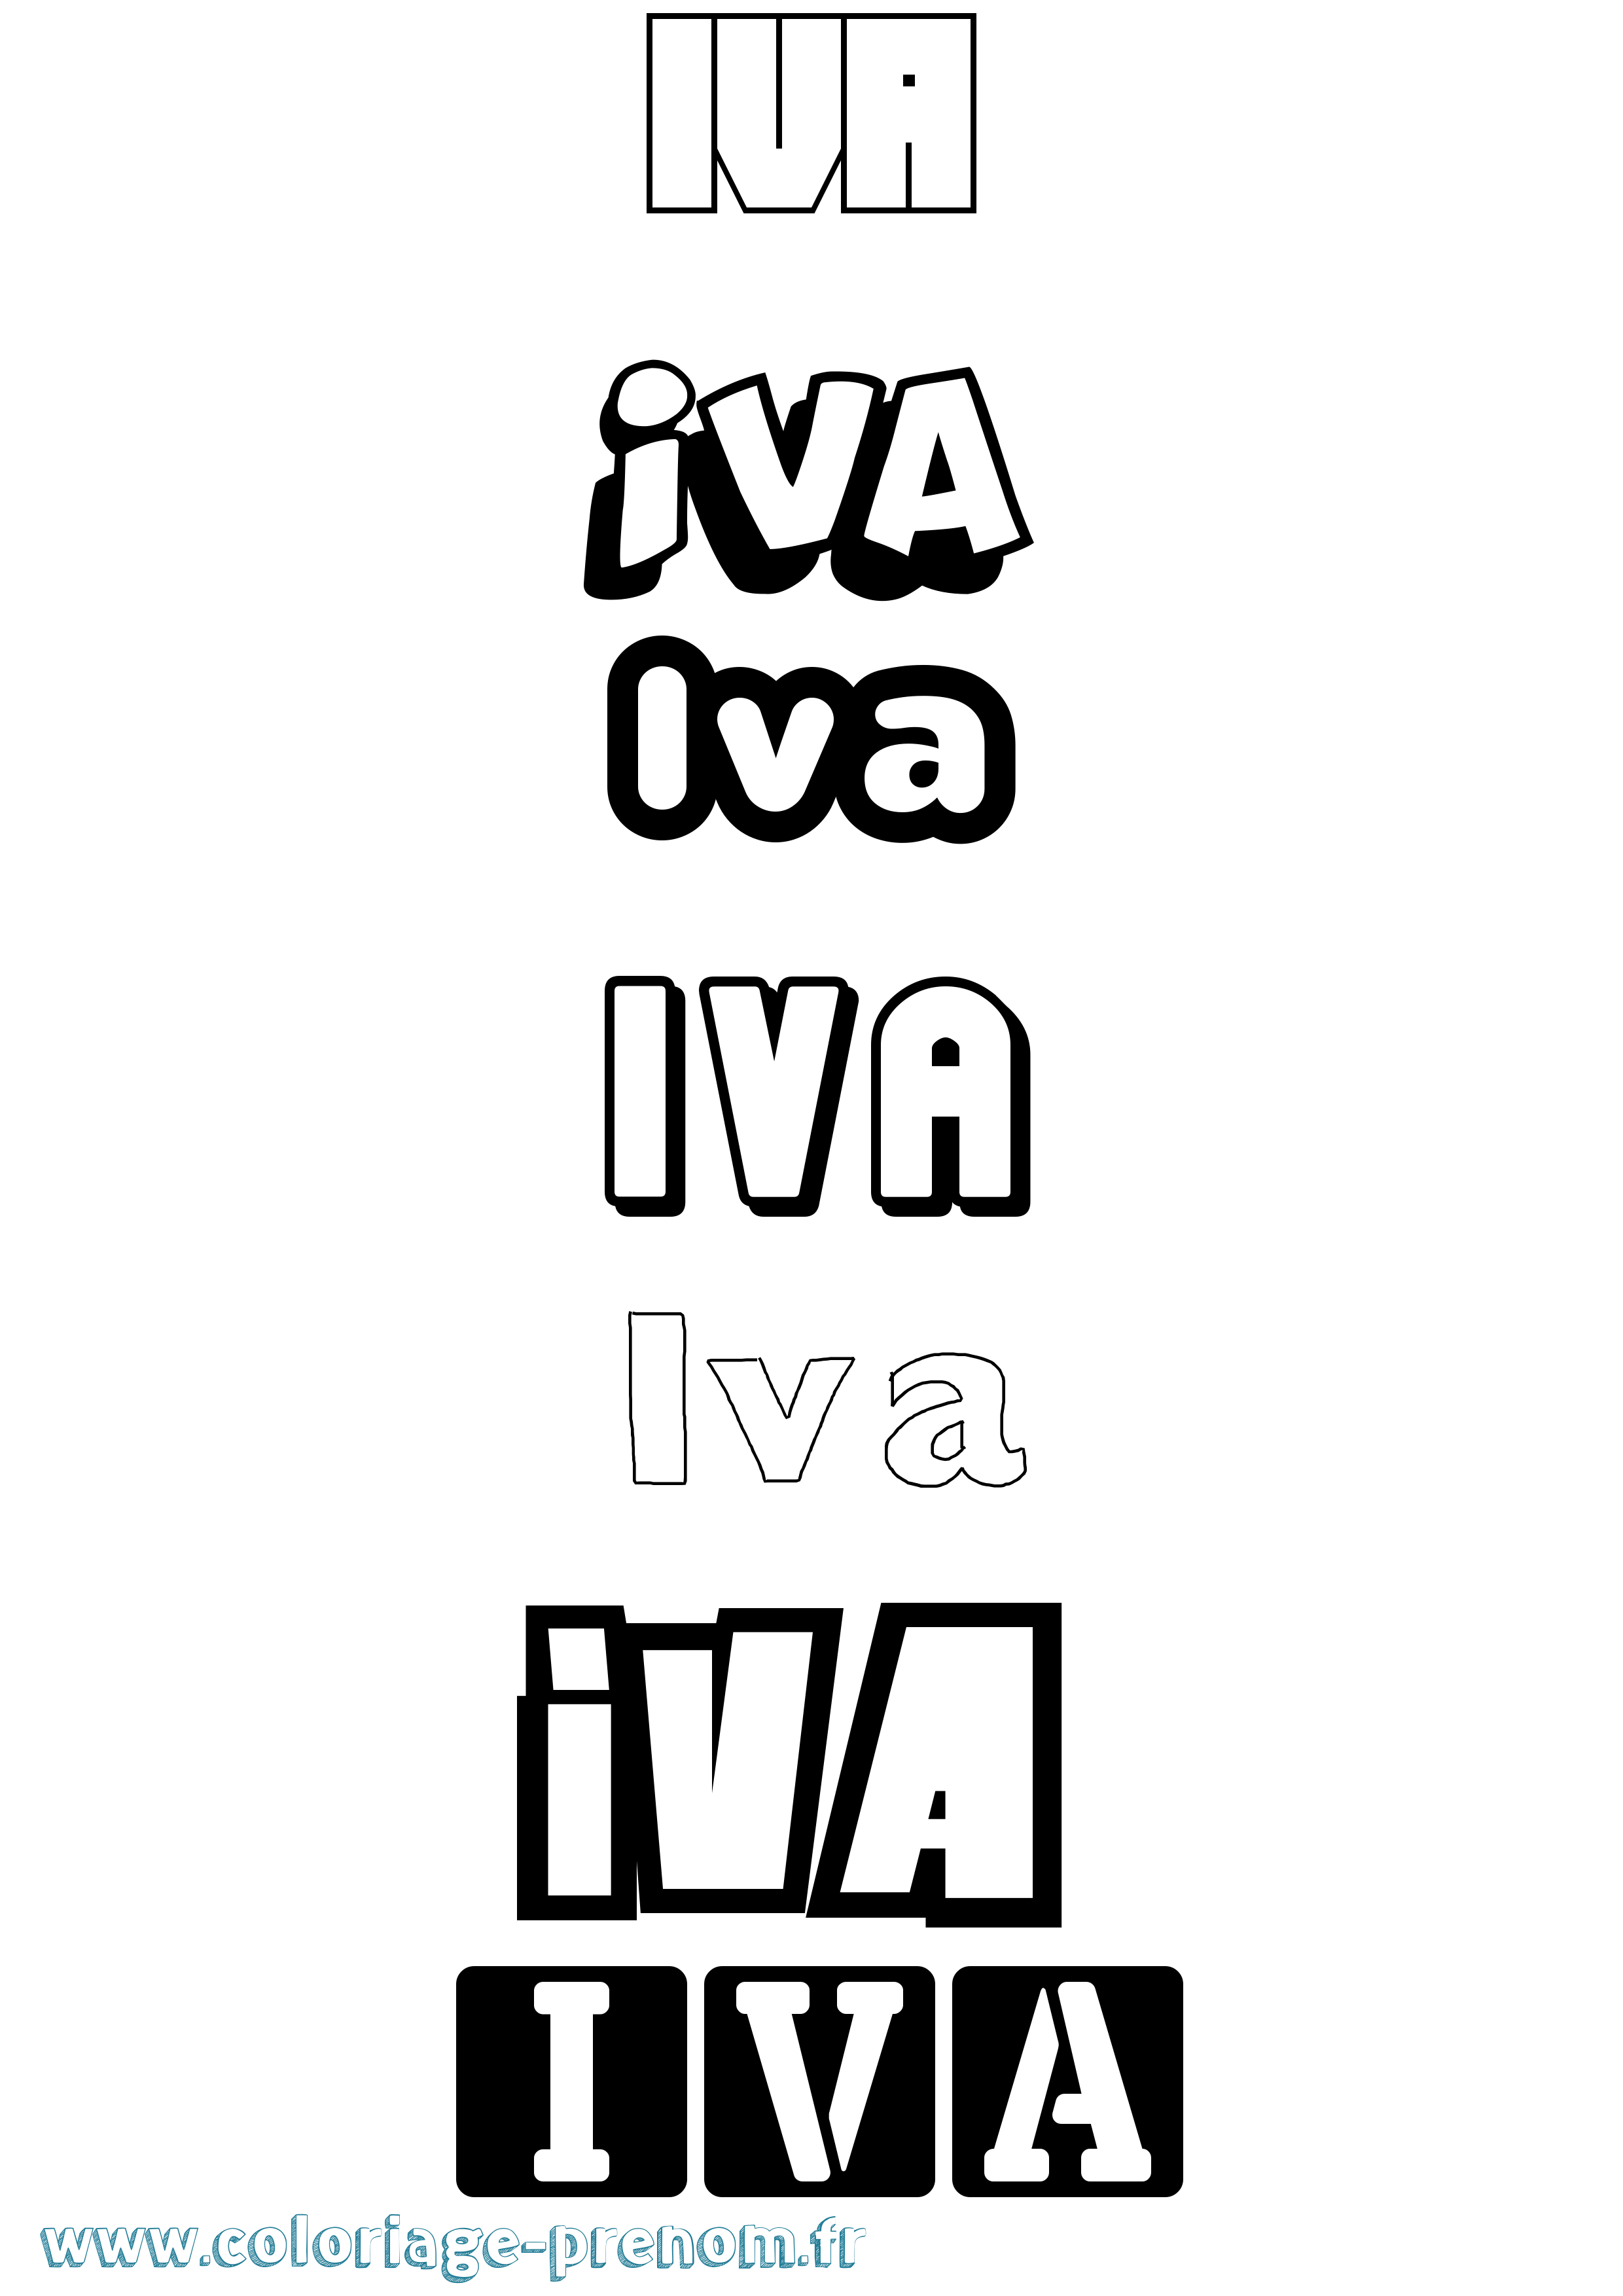 Coloriage prénom Iva Simple